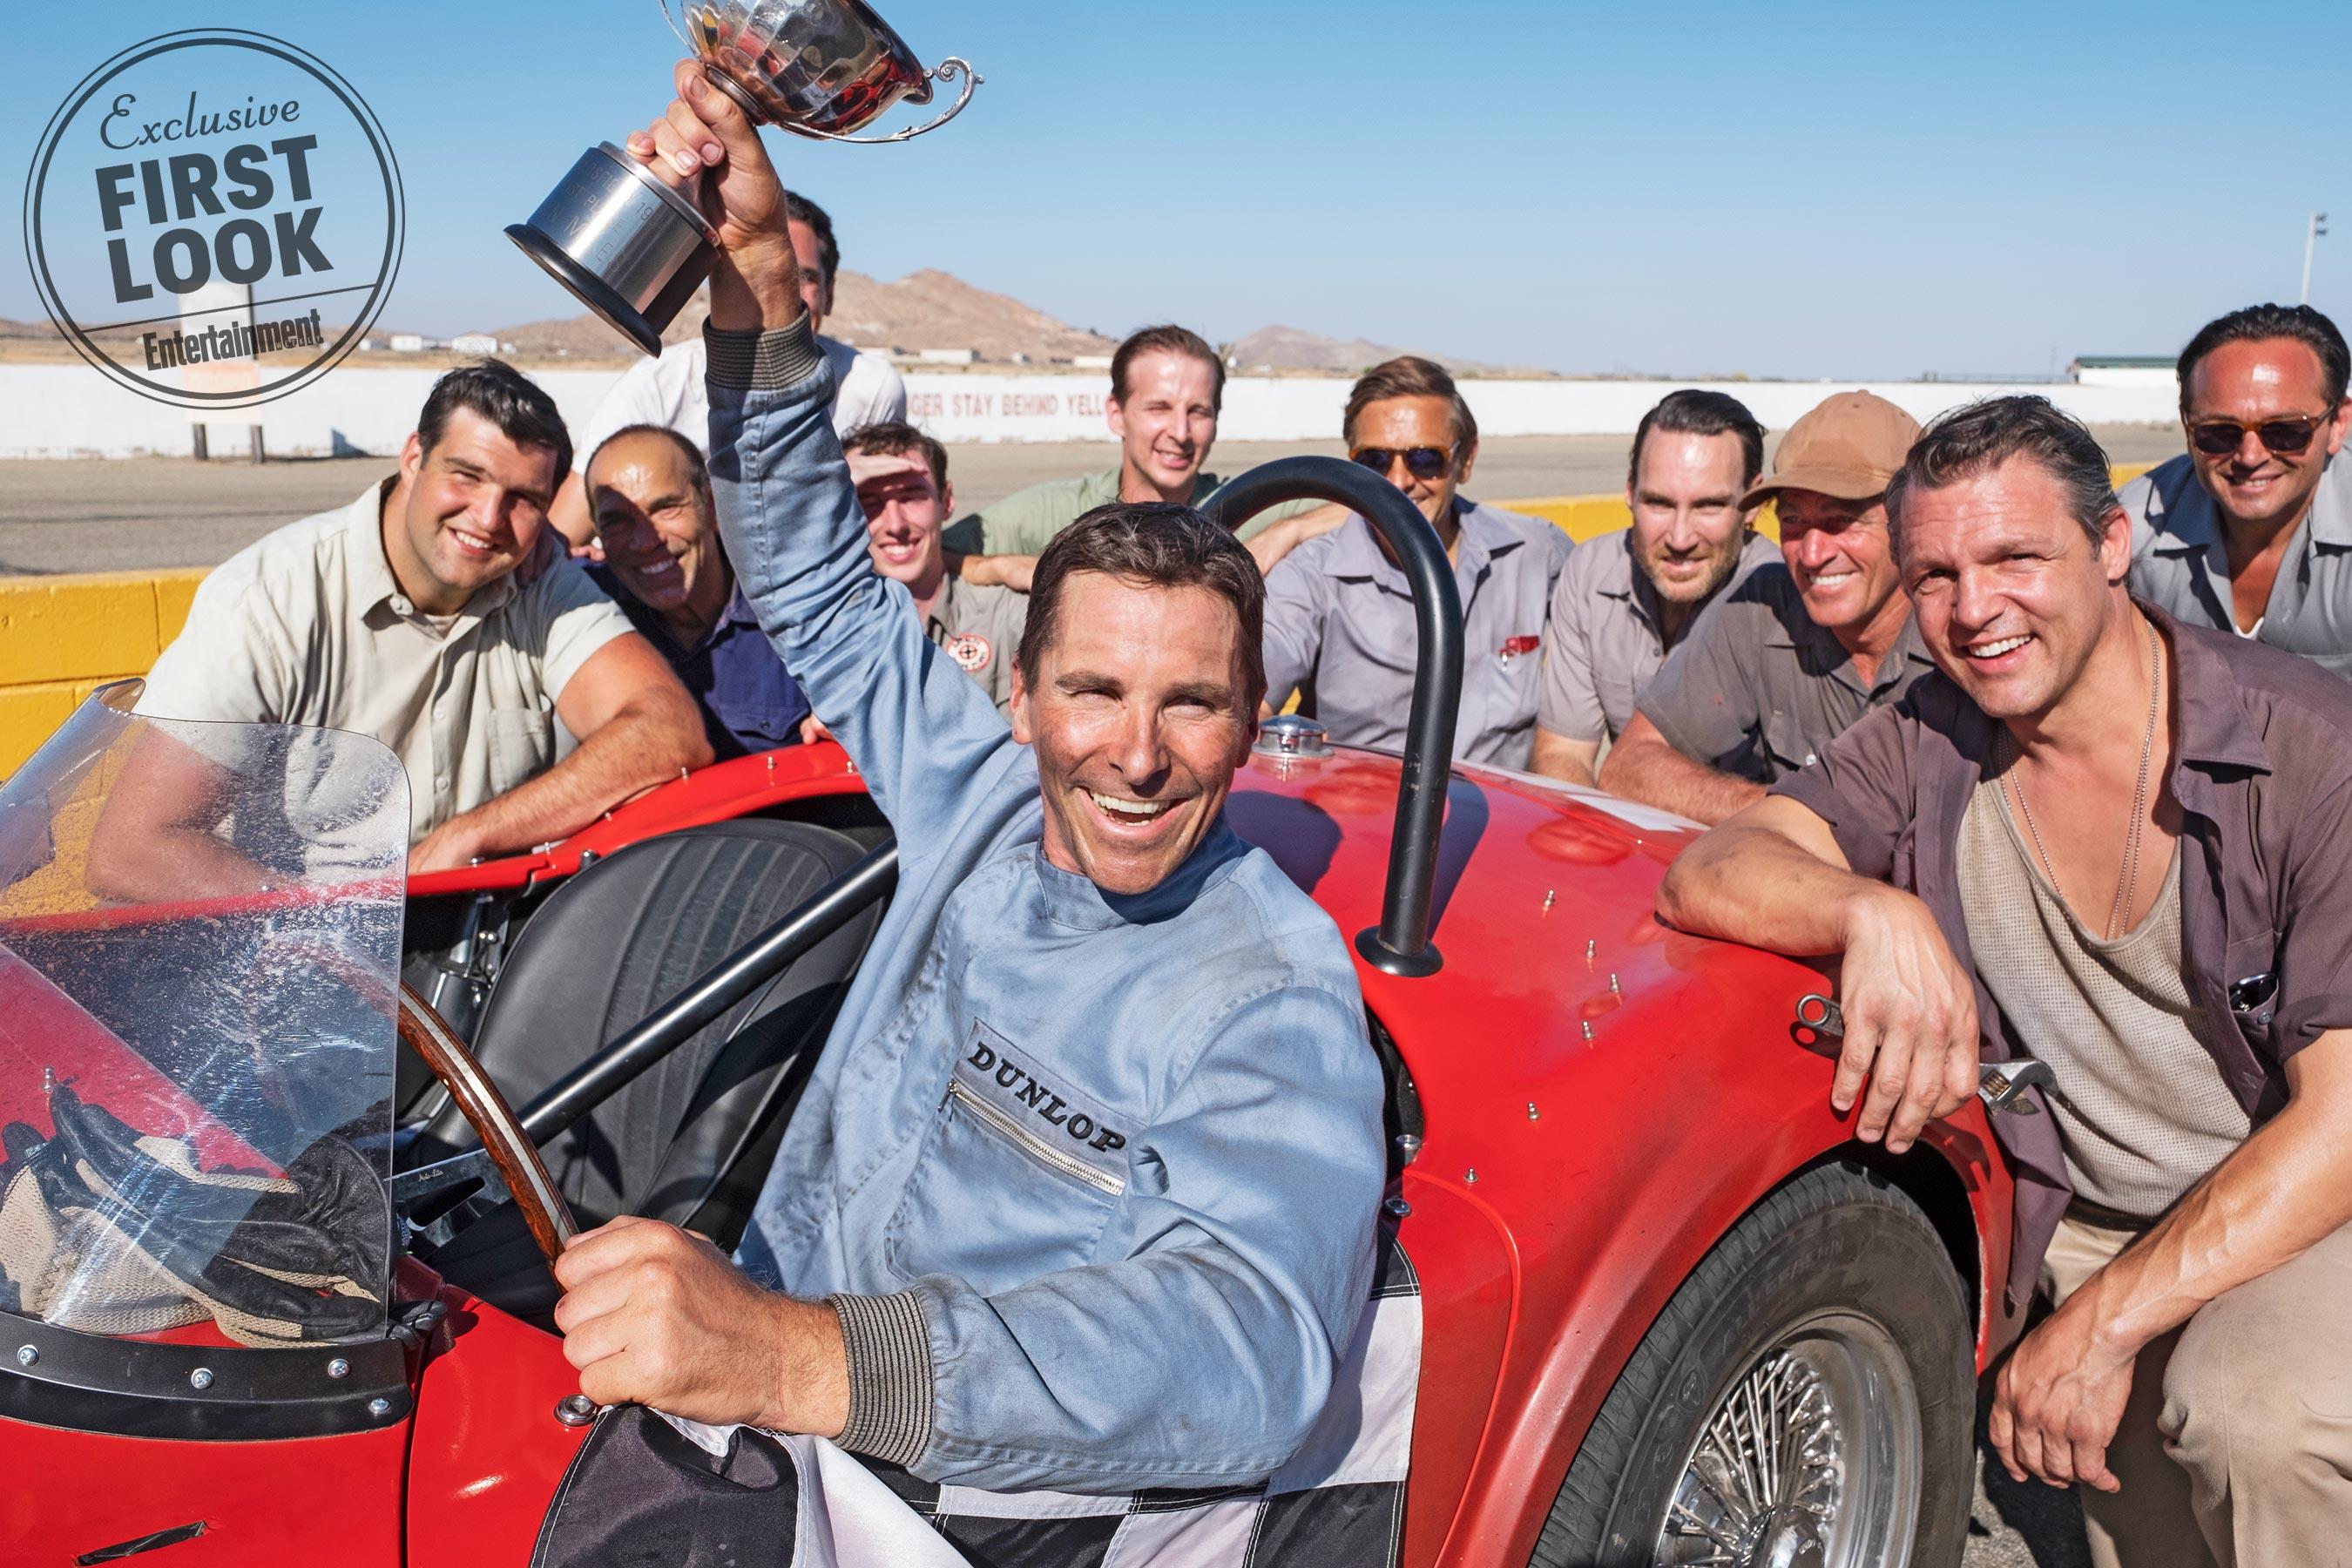 Ford v. Ferrari Image: Christian Bale and Matt Damon Team